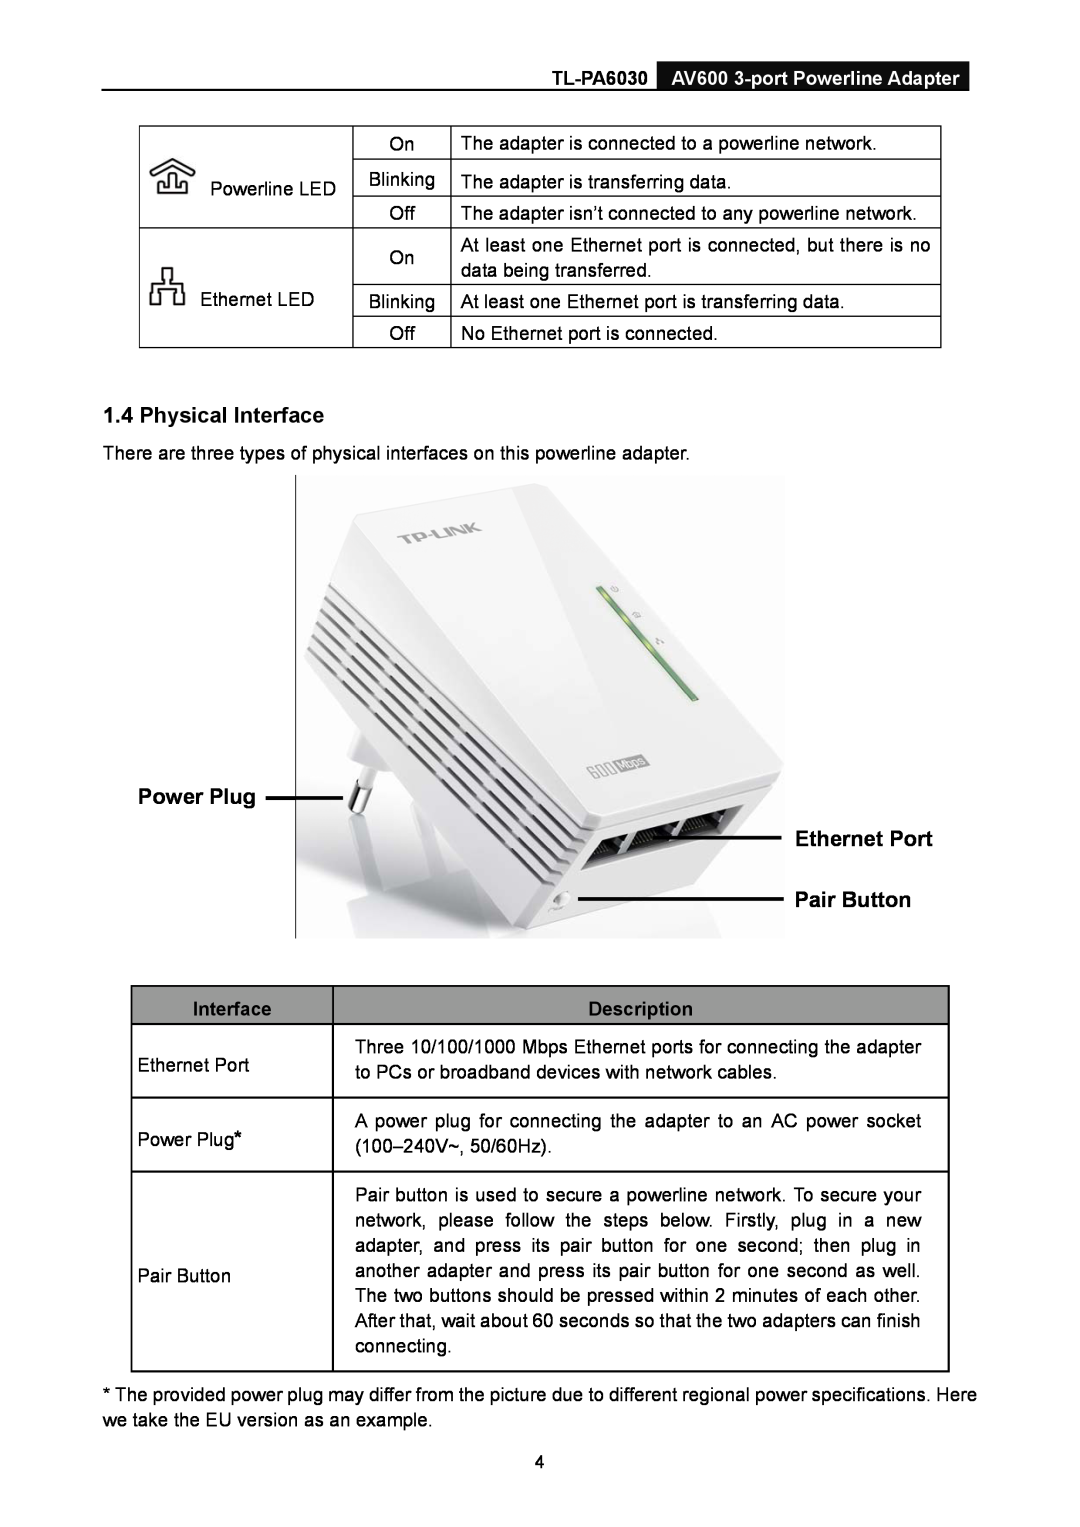 TP-Link TL-PA6030 manual Physical Interface, Power Plug Ethernet Port Pair Button, Description 